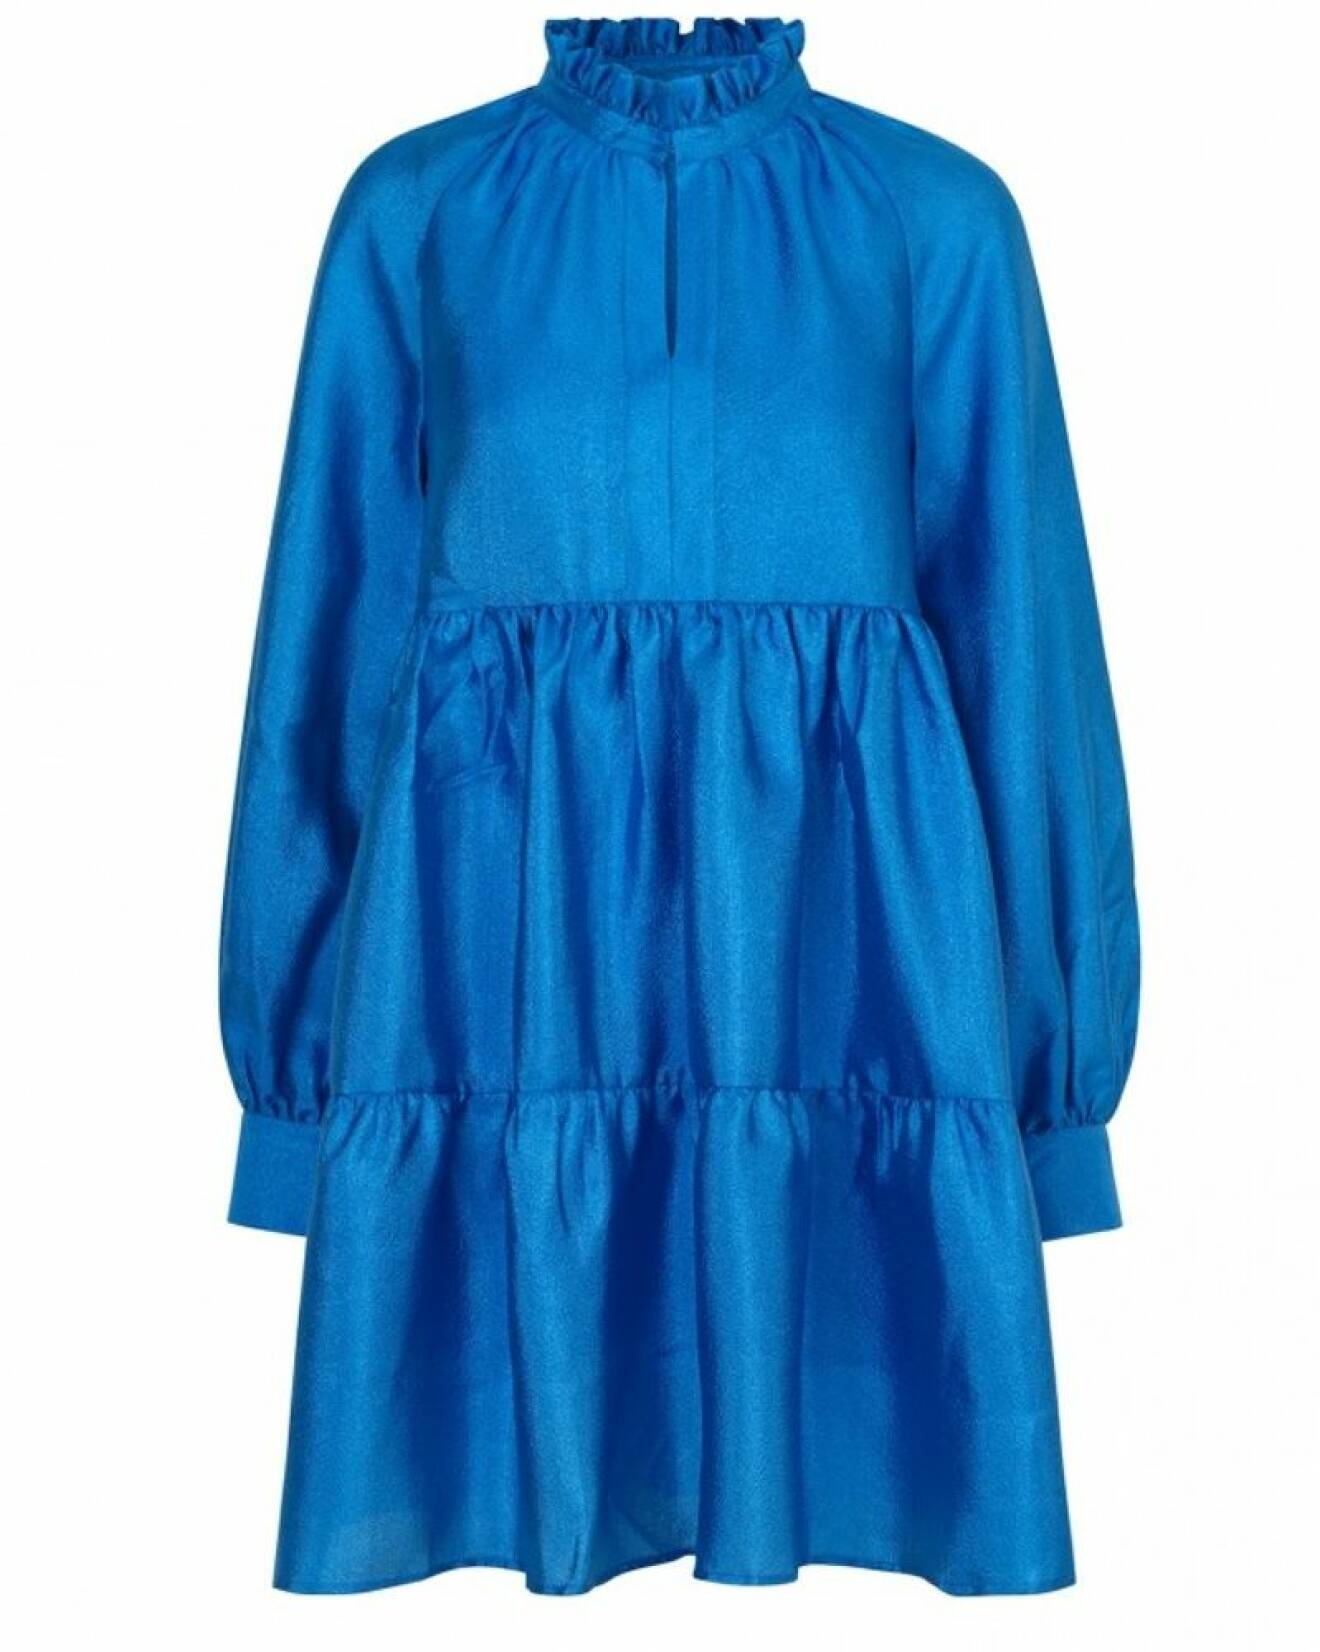 Klarblå klänning med puffärm